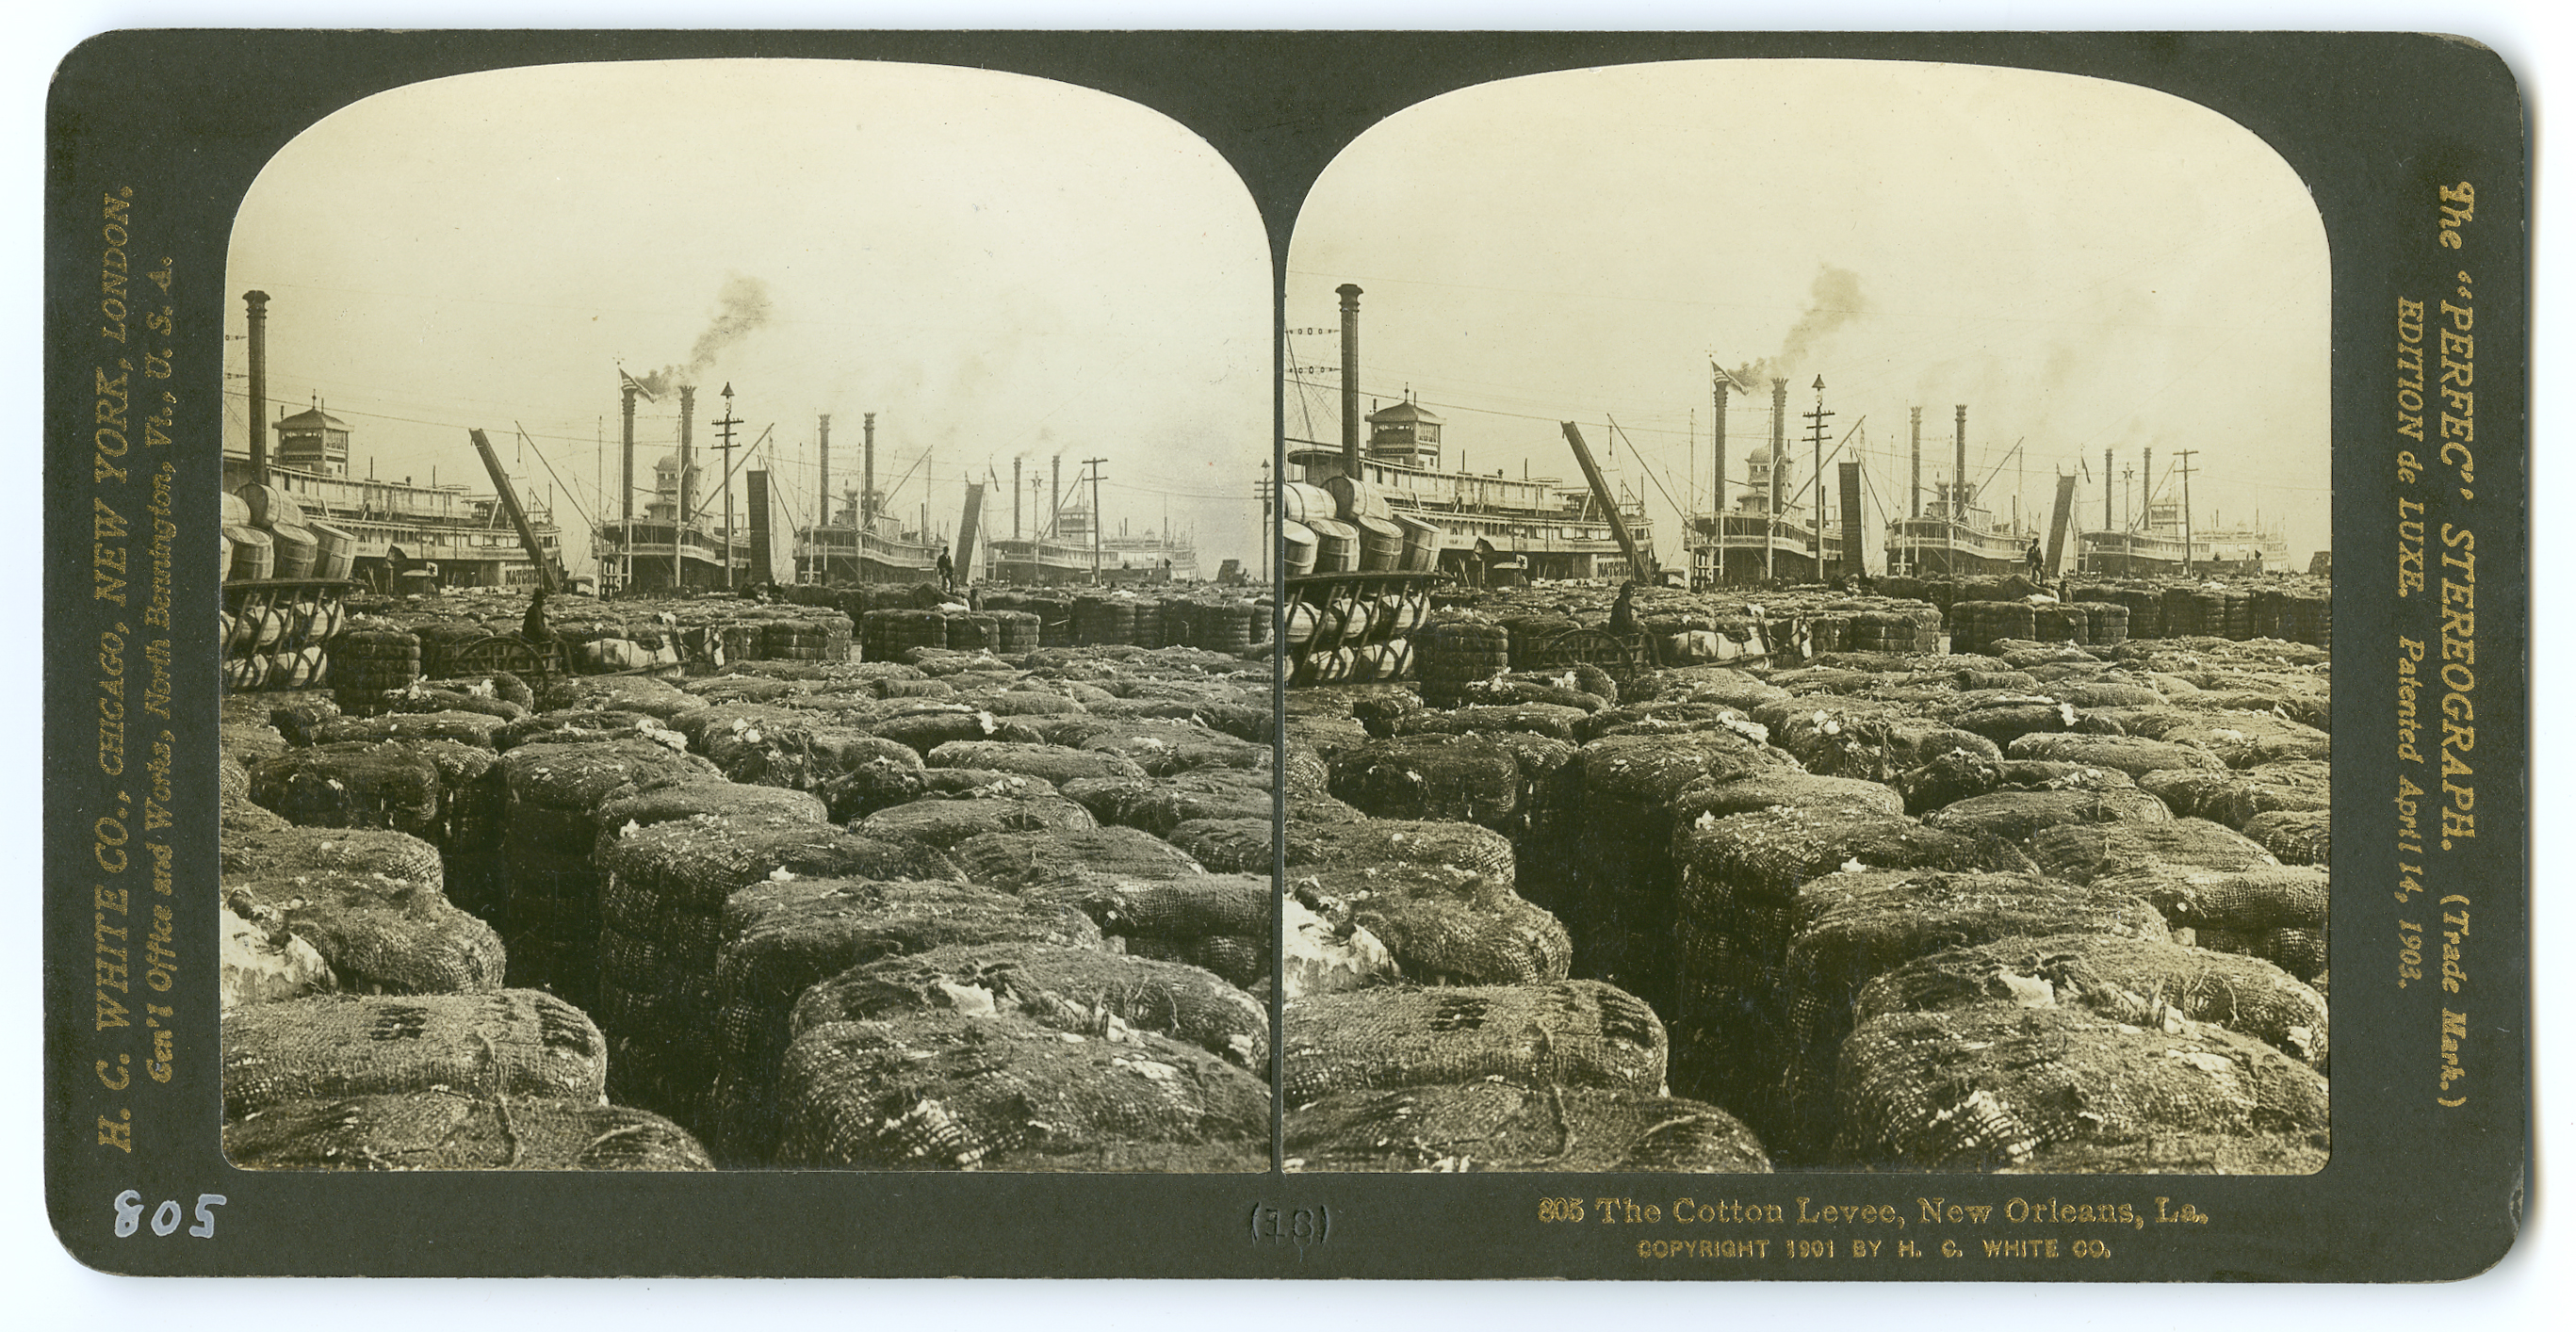 805 The Cotton Levee, New Orleans, LA., 1901